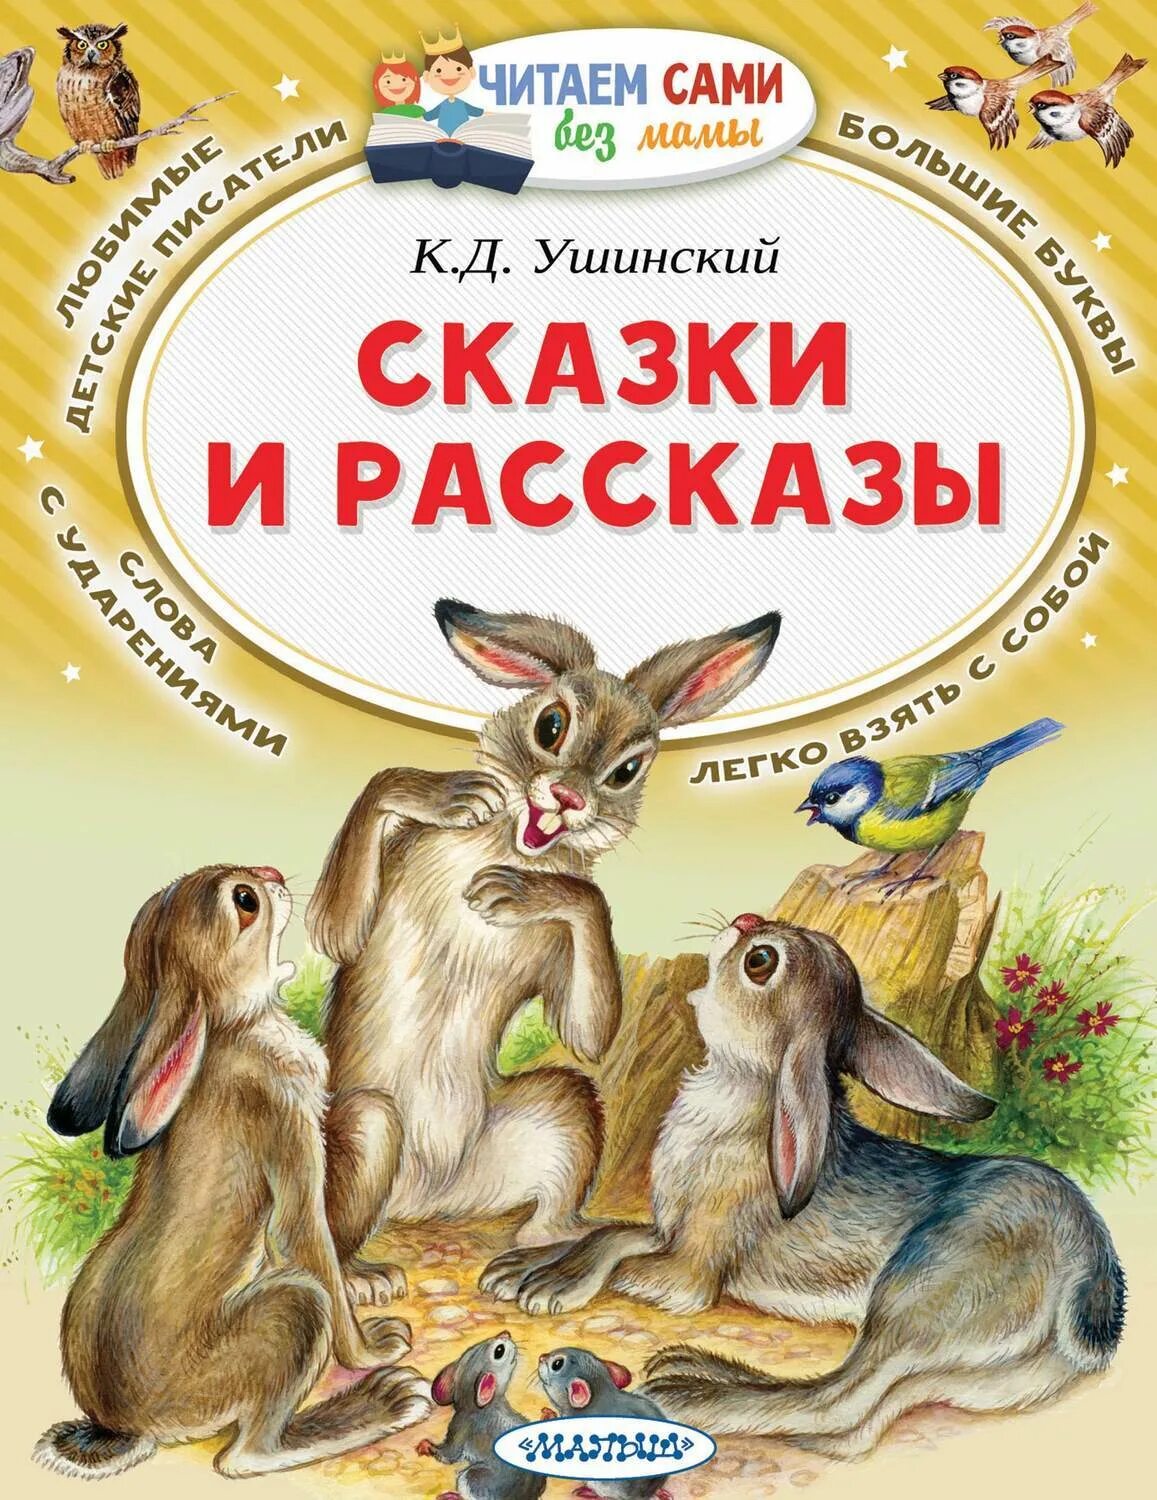 Ушинский, к.д. рассказы и сказки книга.